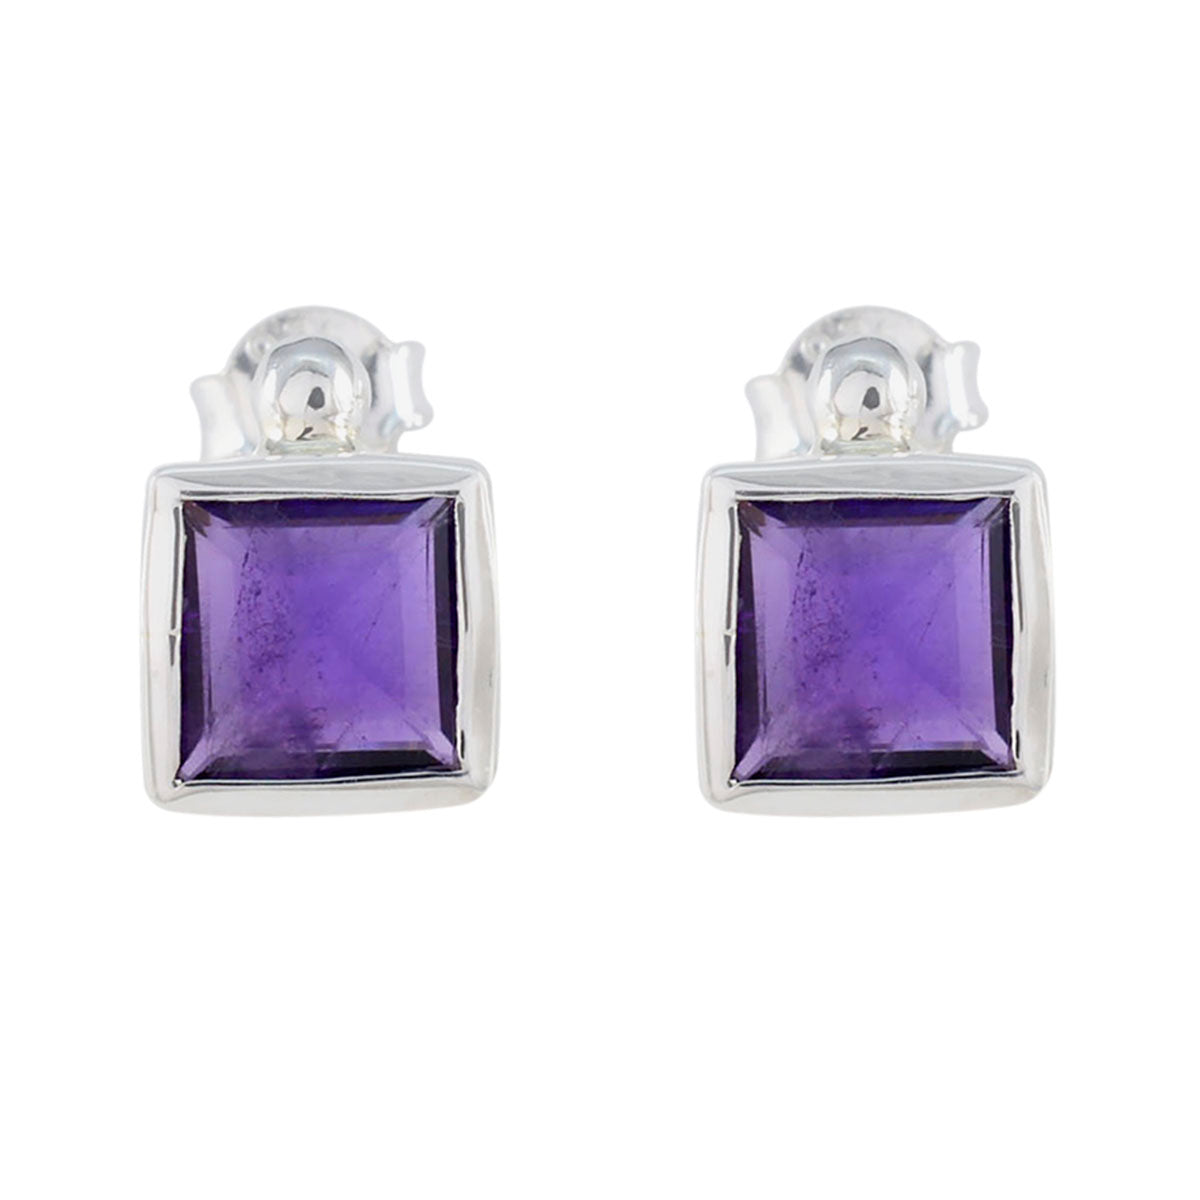 Riyo Pleasing 925 Sterling Silver Earring For Wife Amethyst Earring Bezel Setting Purple Earring Stud Earring